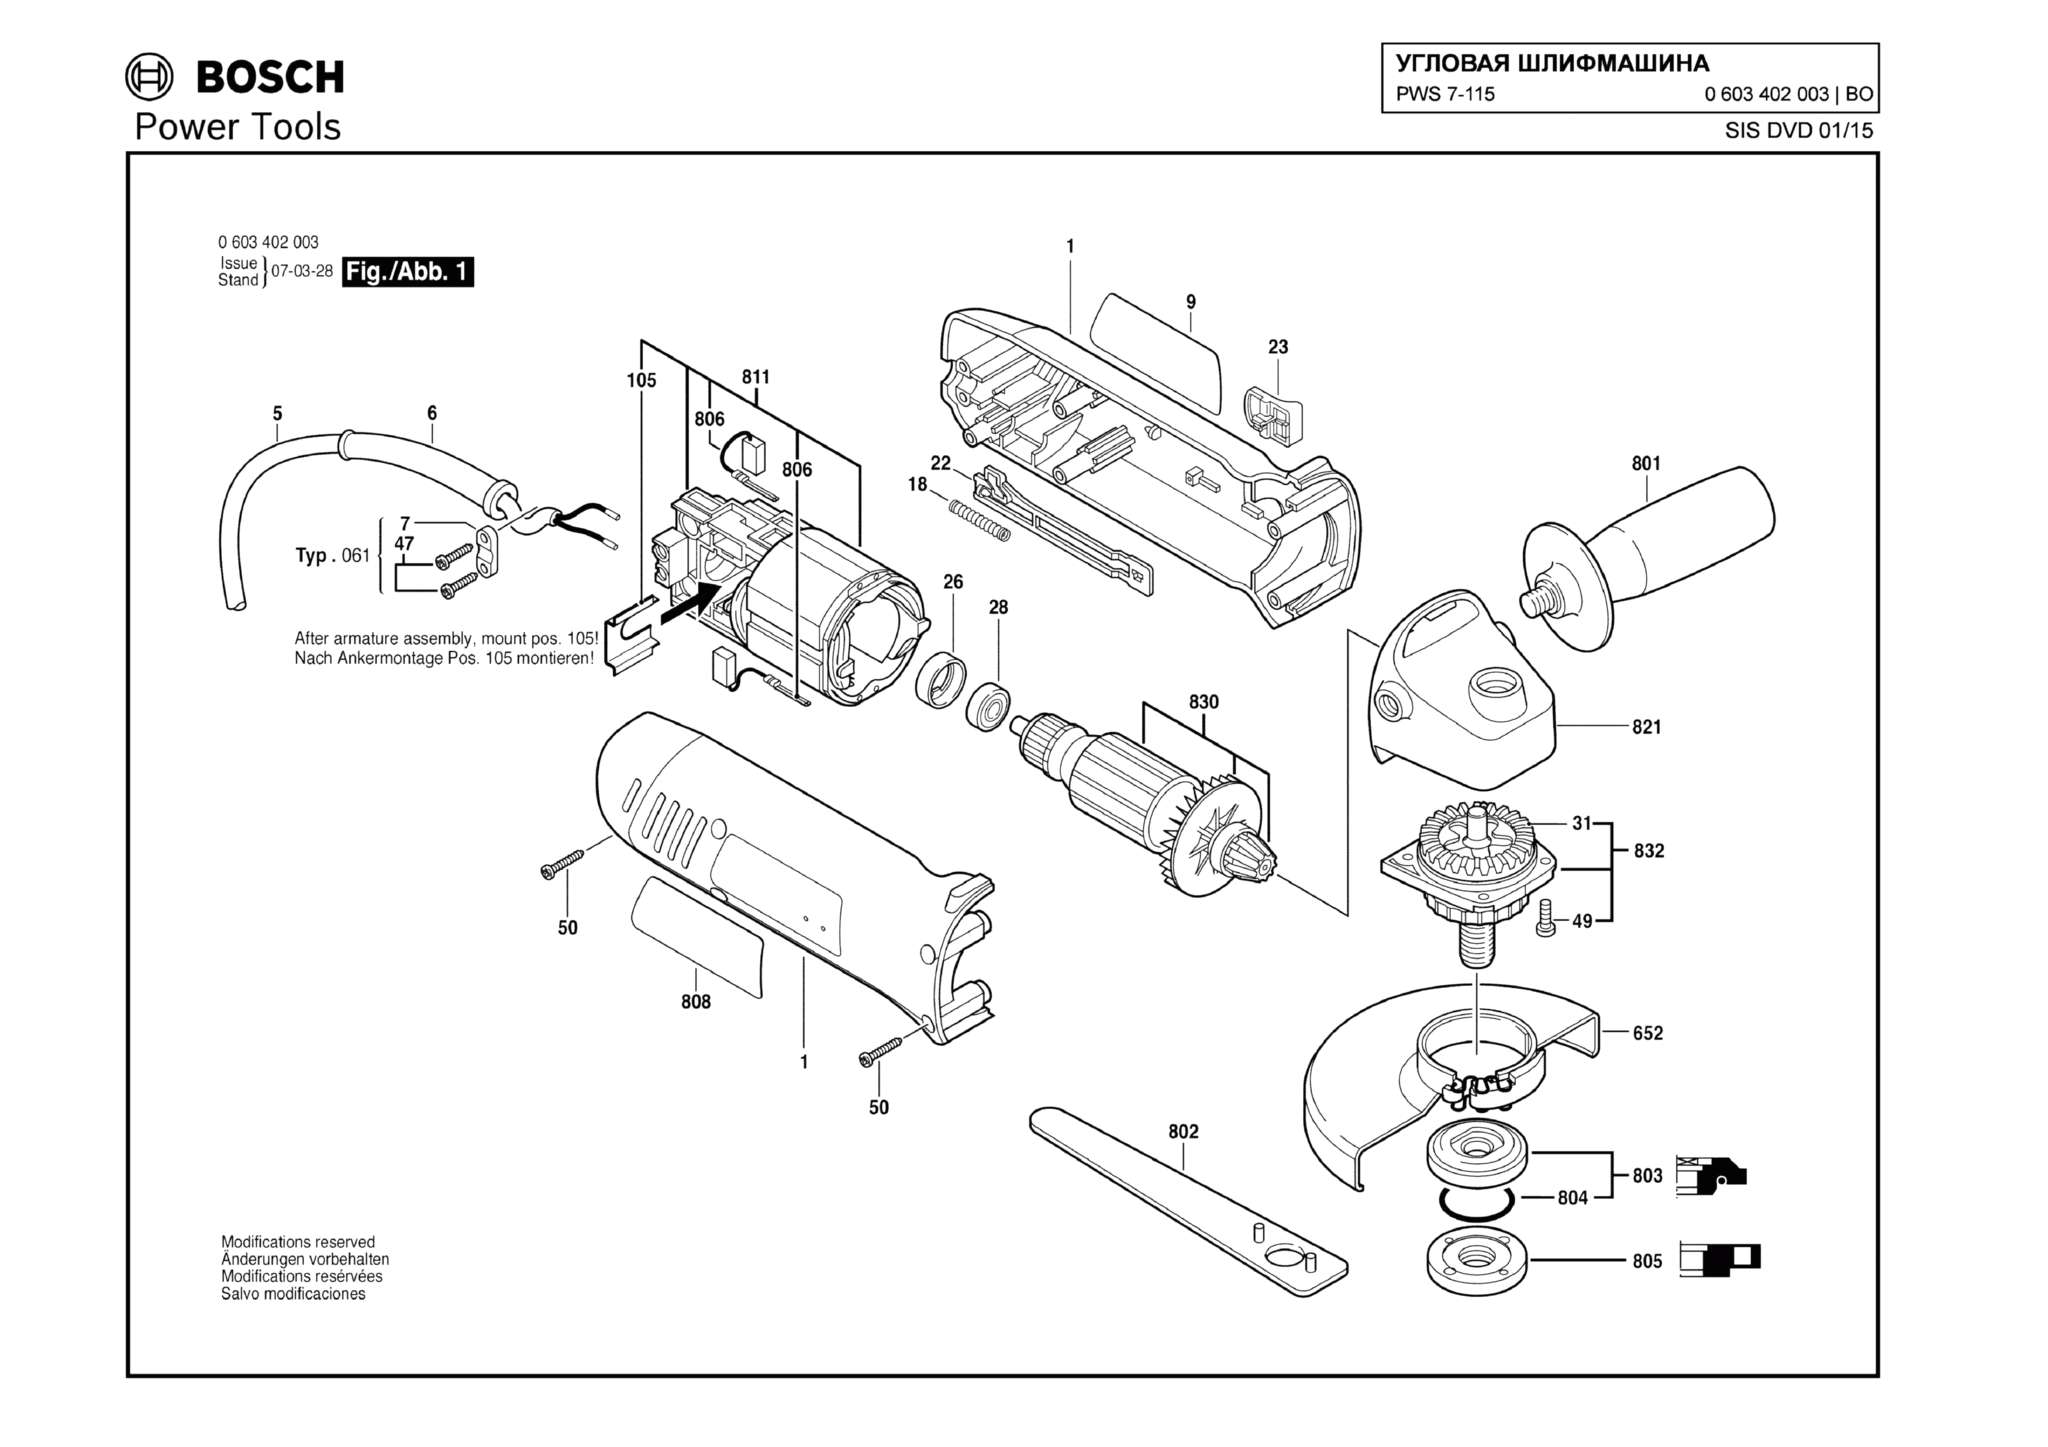 Запчасти, схема и деталировка Bosch PWS 7-115 (ТИП 0603402003)